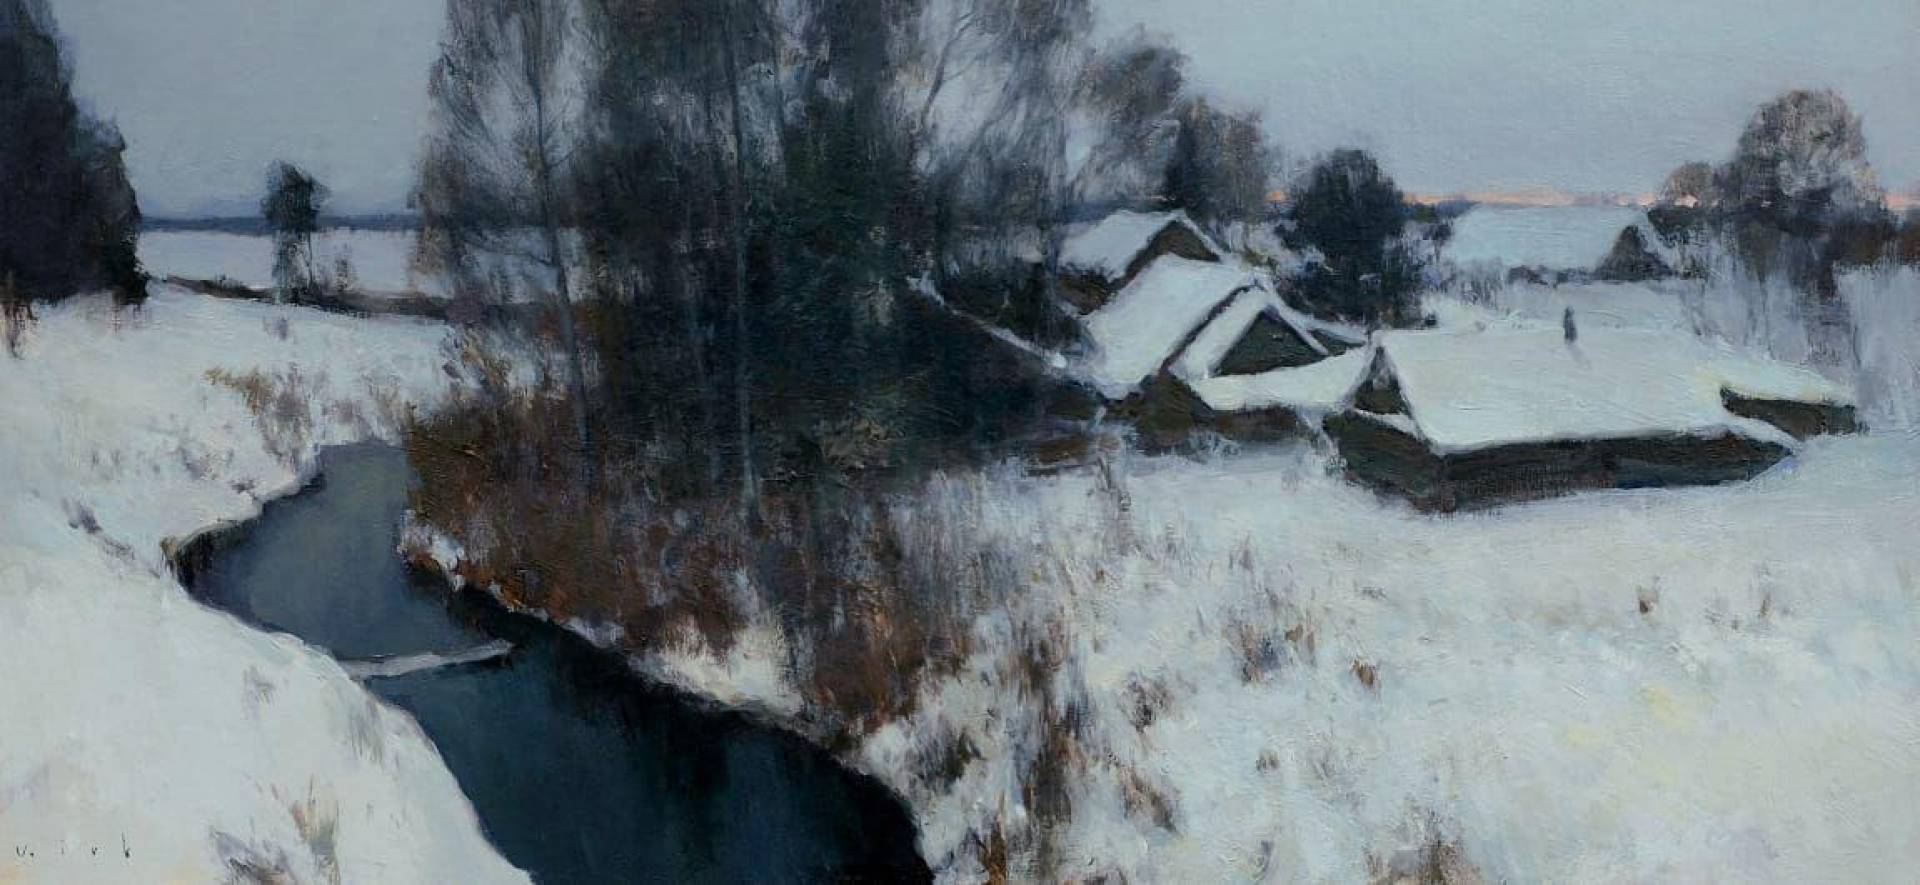 Winter village. Sketch - 1, Vladimir Kirillov, Buy the painting Oil